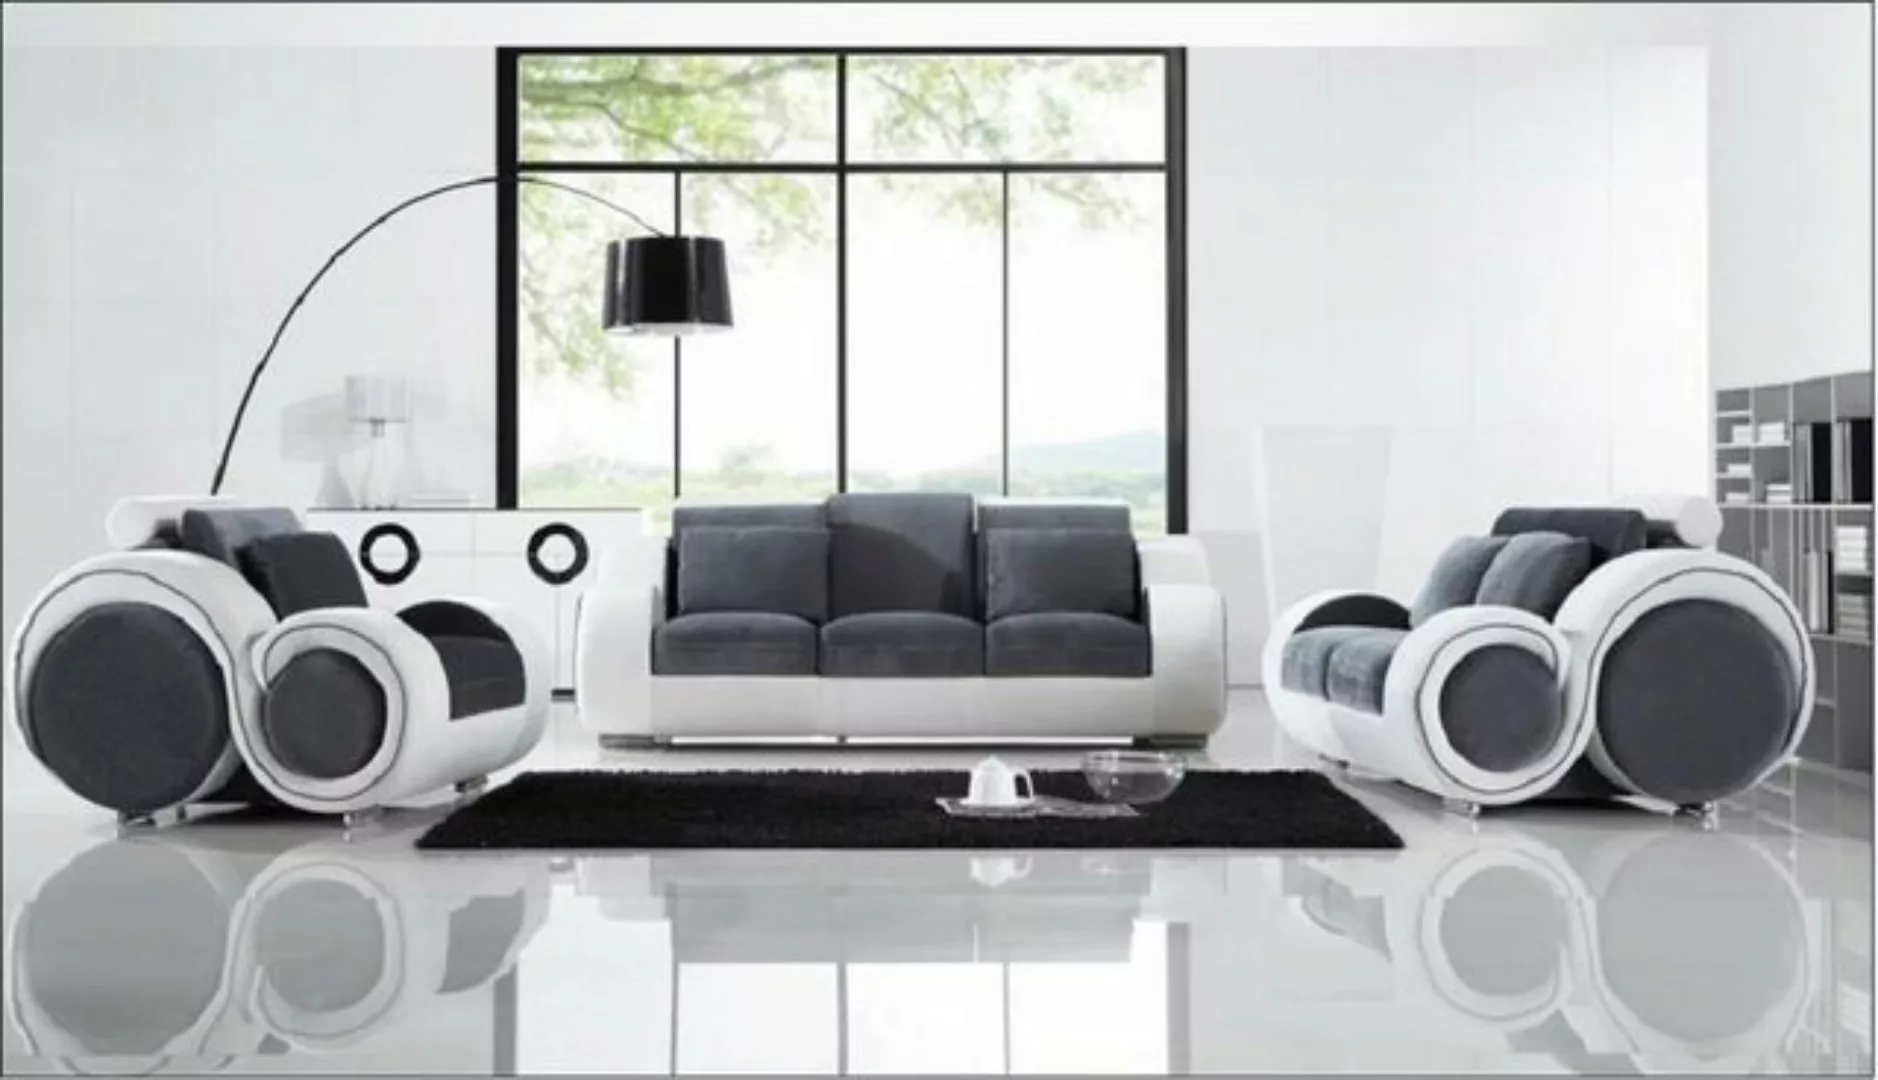 JVmoebel Sofa Design Sofas Couch Polster Moderne Couchen Sofa 2 Sitzer Kuns günstig online kaufen